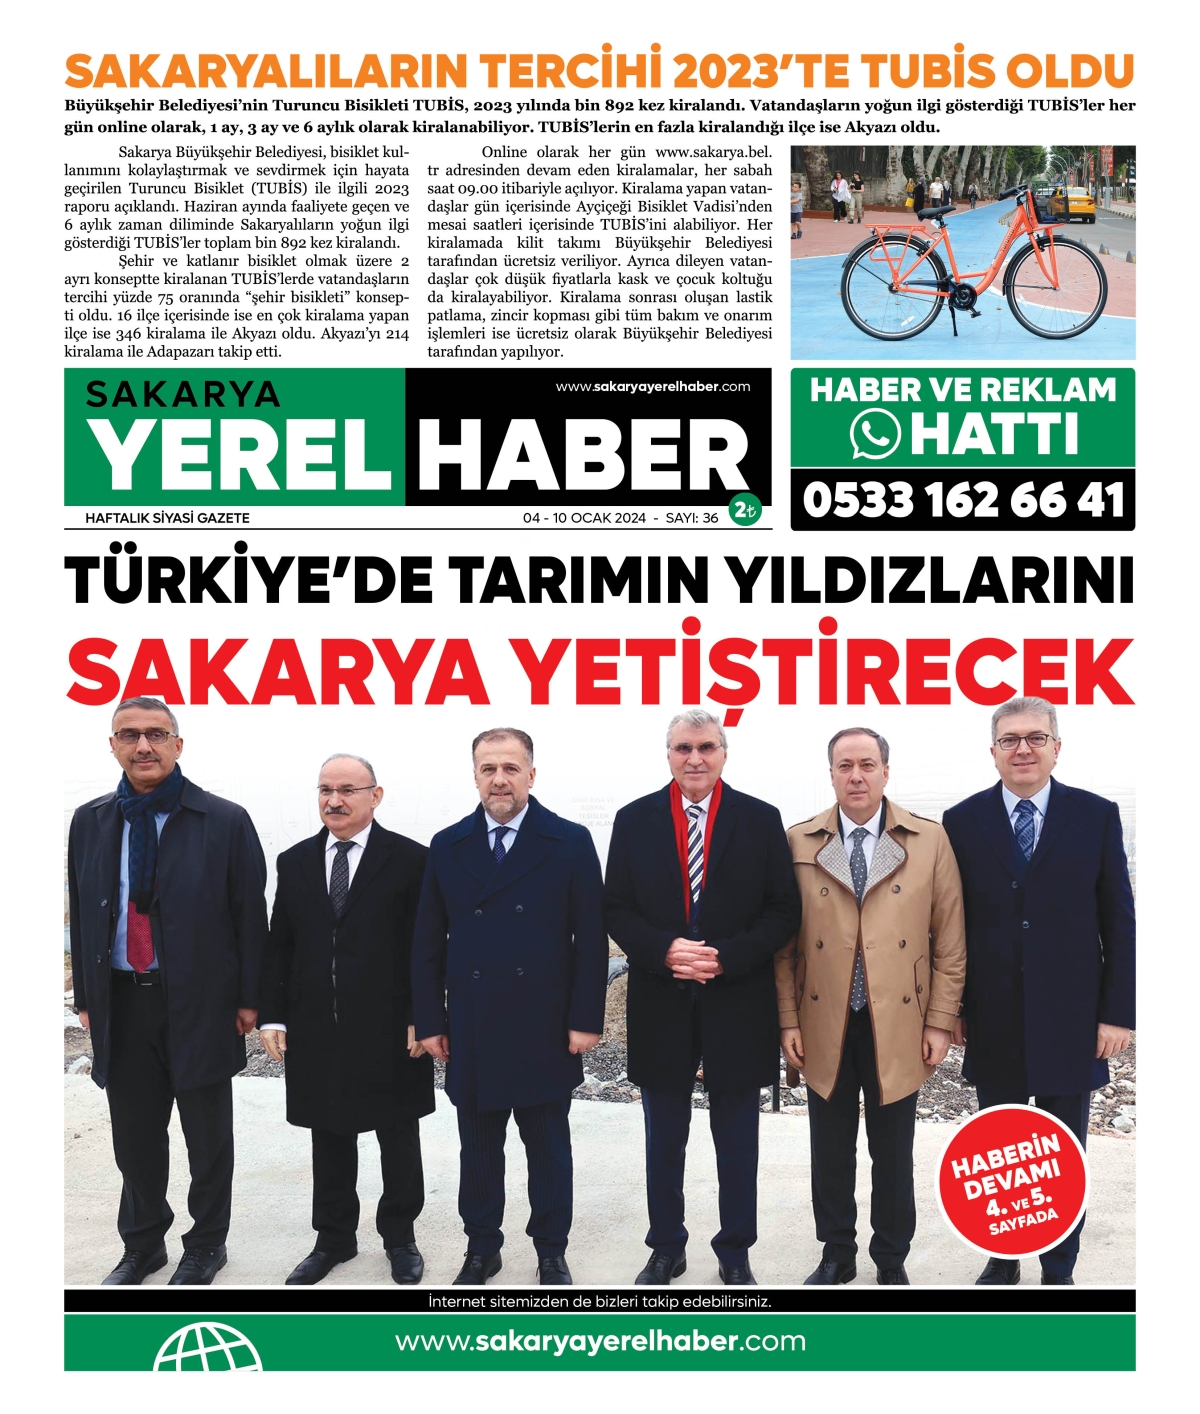 Sakarya Yerel Haber Gazetesi 36. Sayısı Çıktı